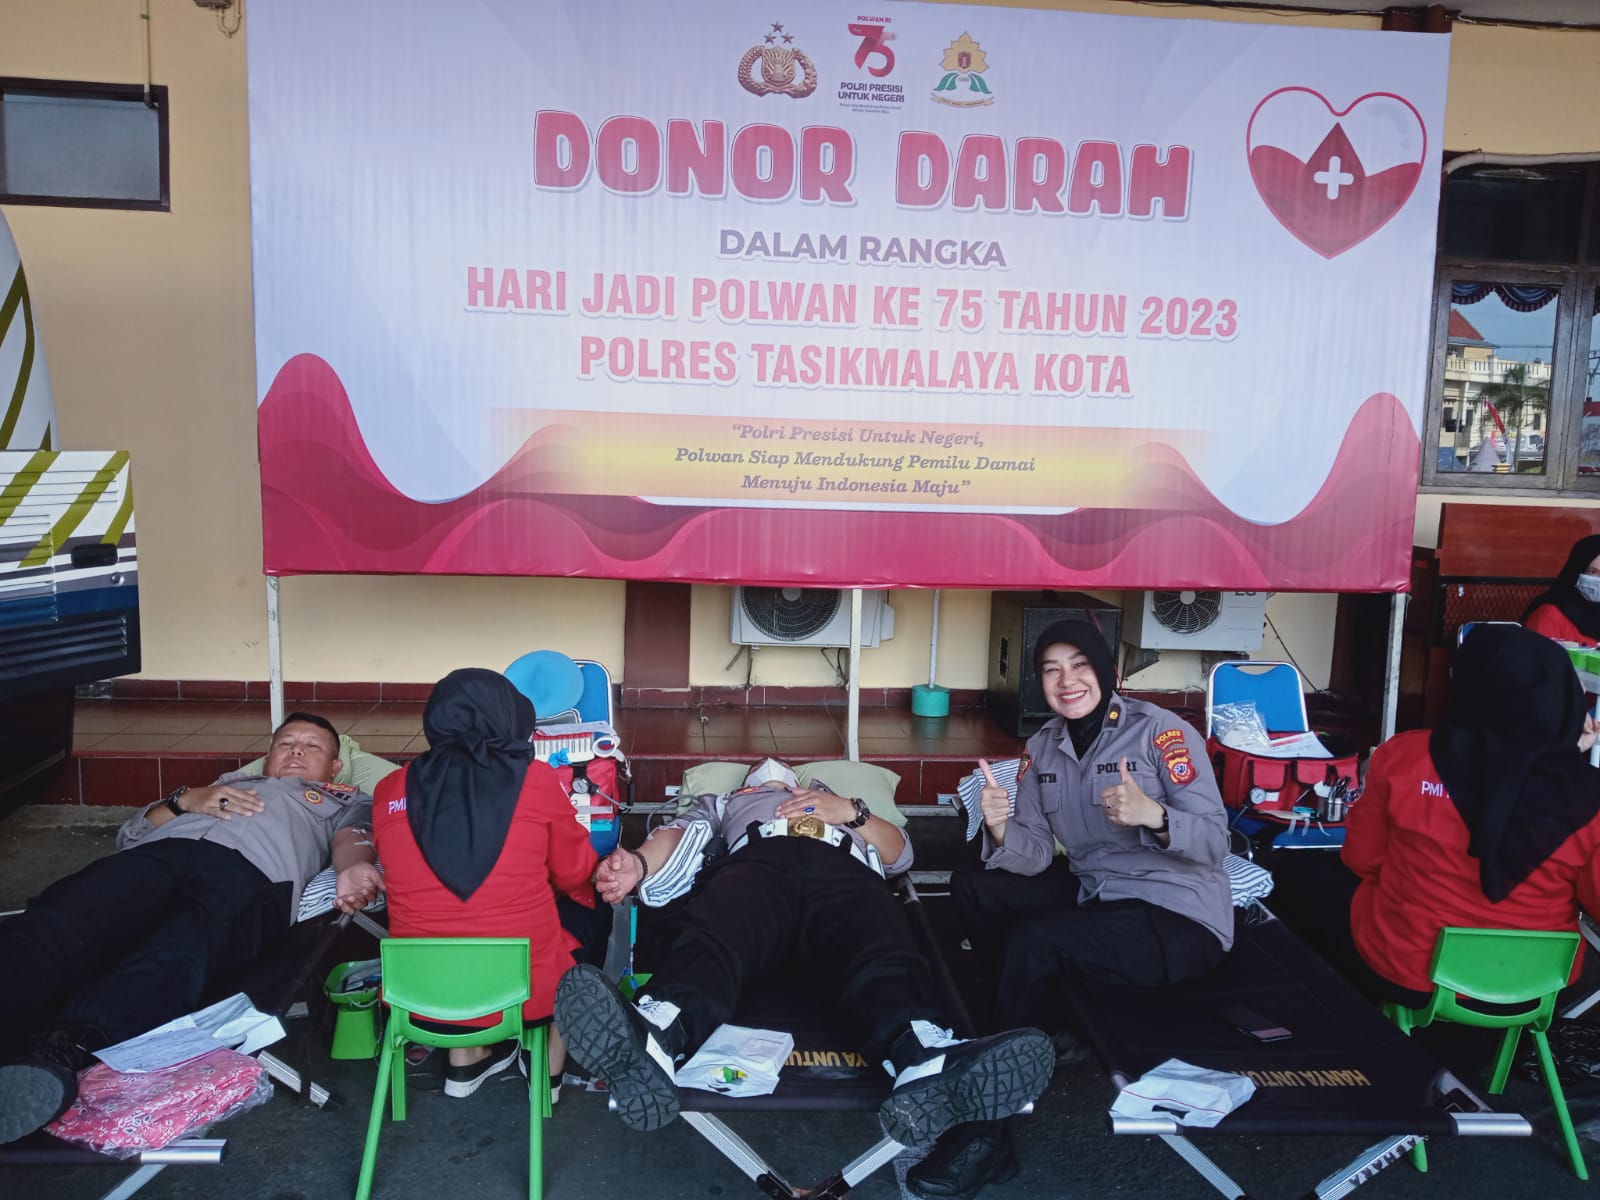 Sambut Hari Jadi Polwan ke-75, Personel Polres Tasikmalaya Kota Gelar Donor Darah